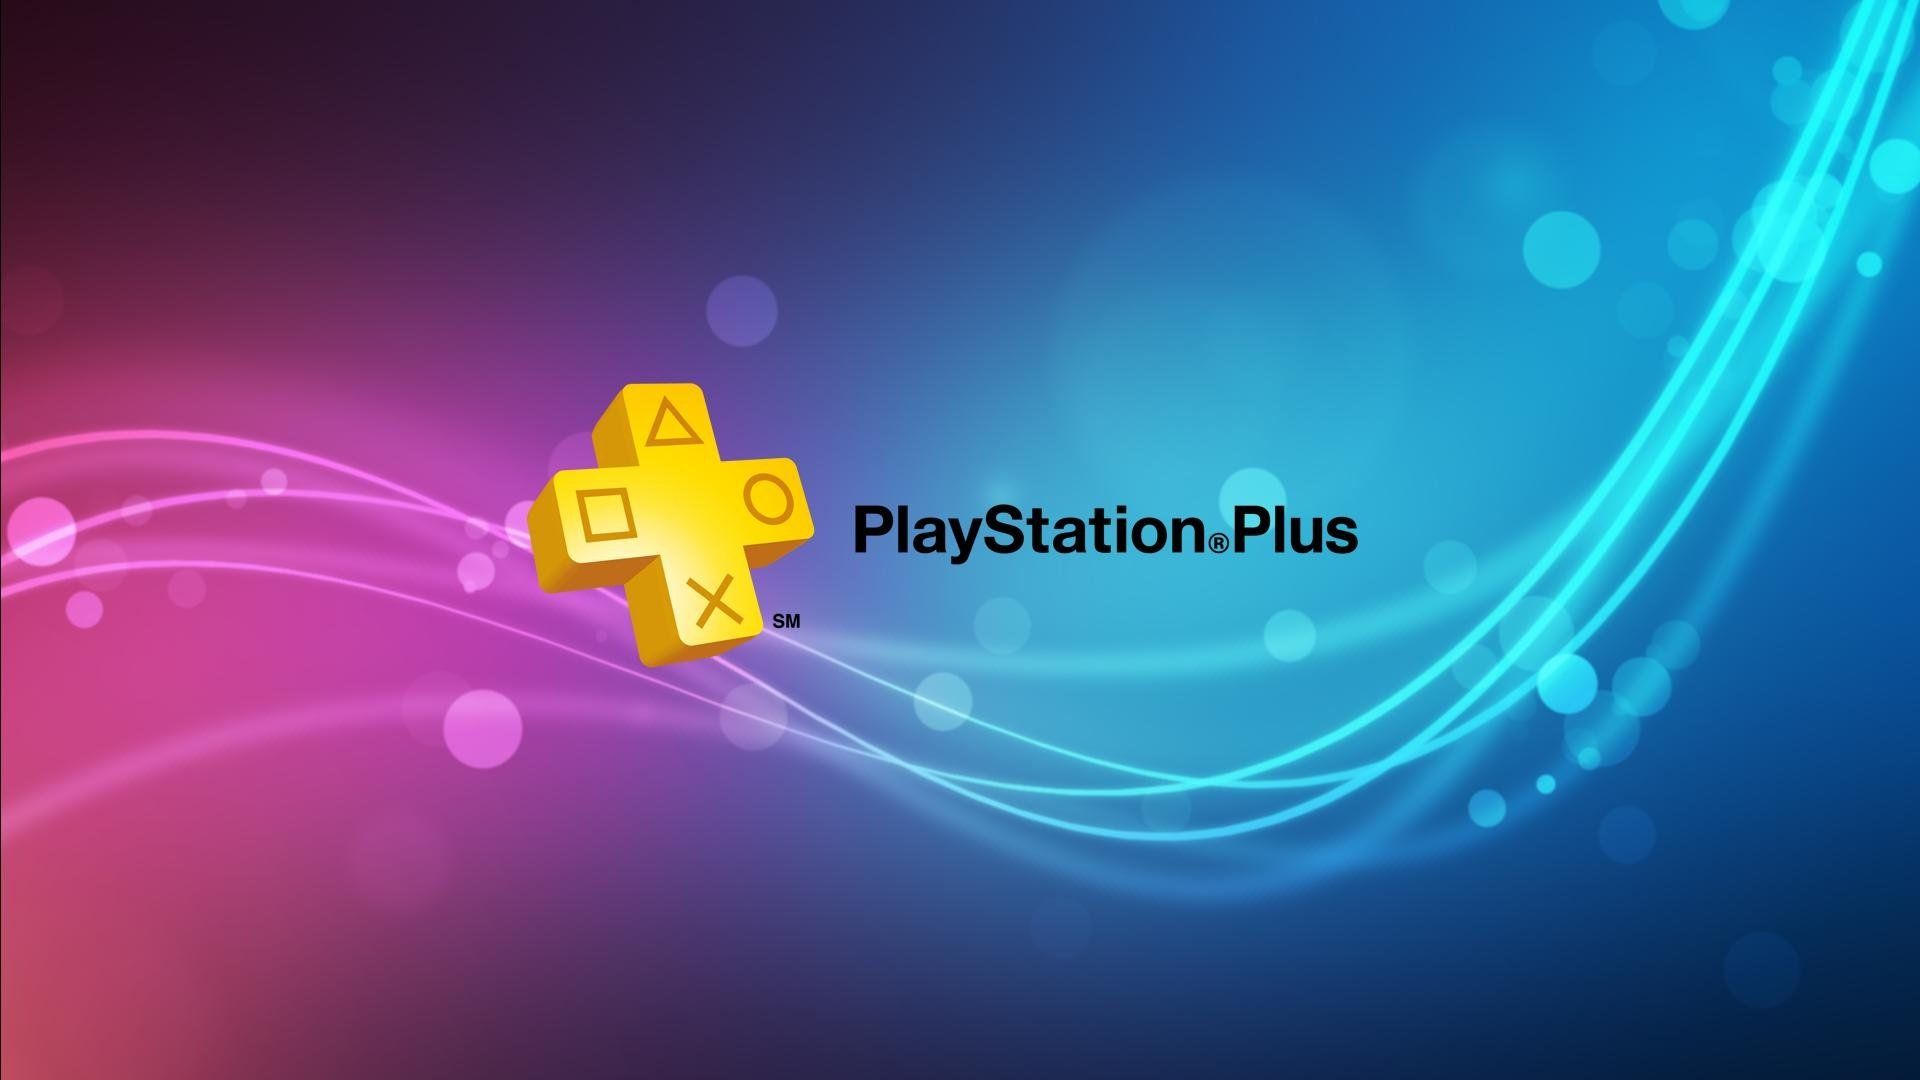 Sony divulga jogos gratuitos da PS Plus em junho - Tecnologia e